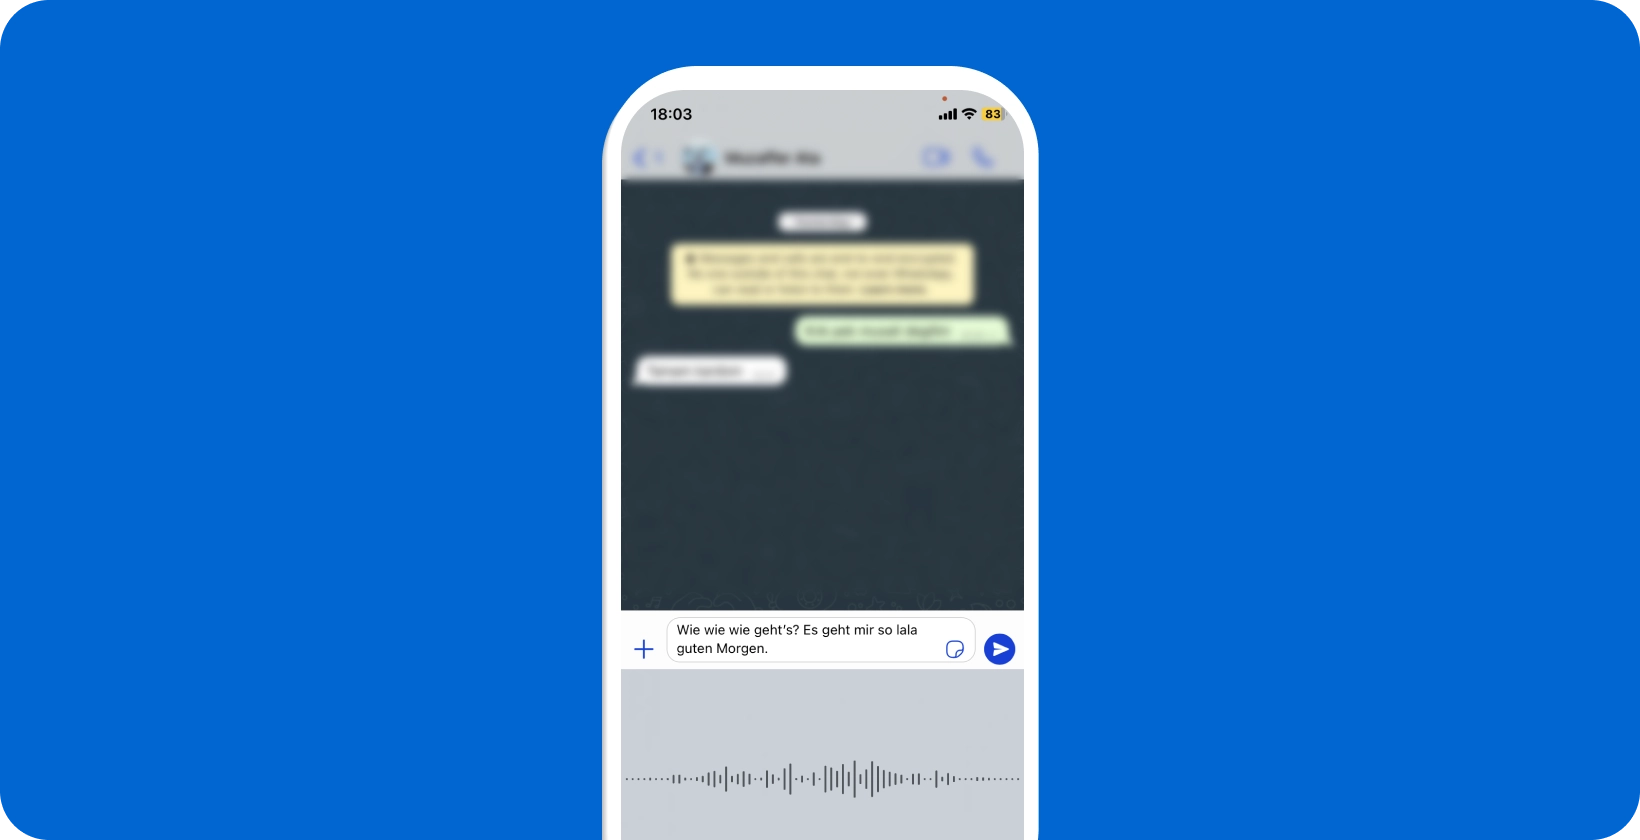 Smartphone que muestra el dictado de voz de WhatsApp en curso, mostrando la conversión de voz a texto en tiempo real.